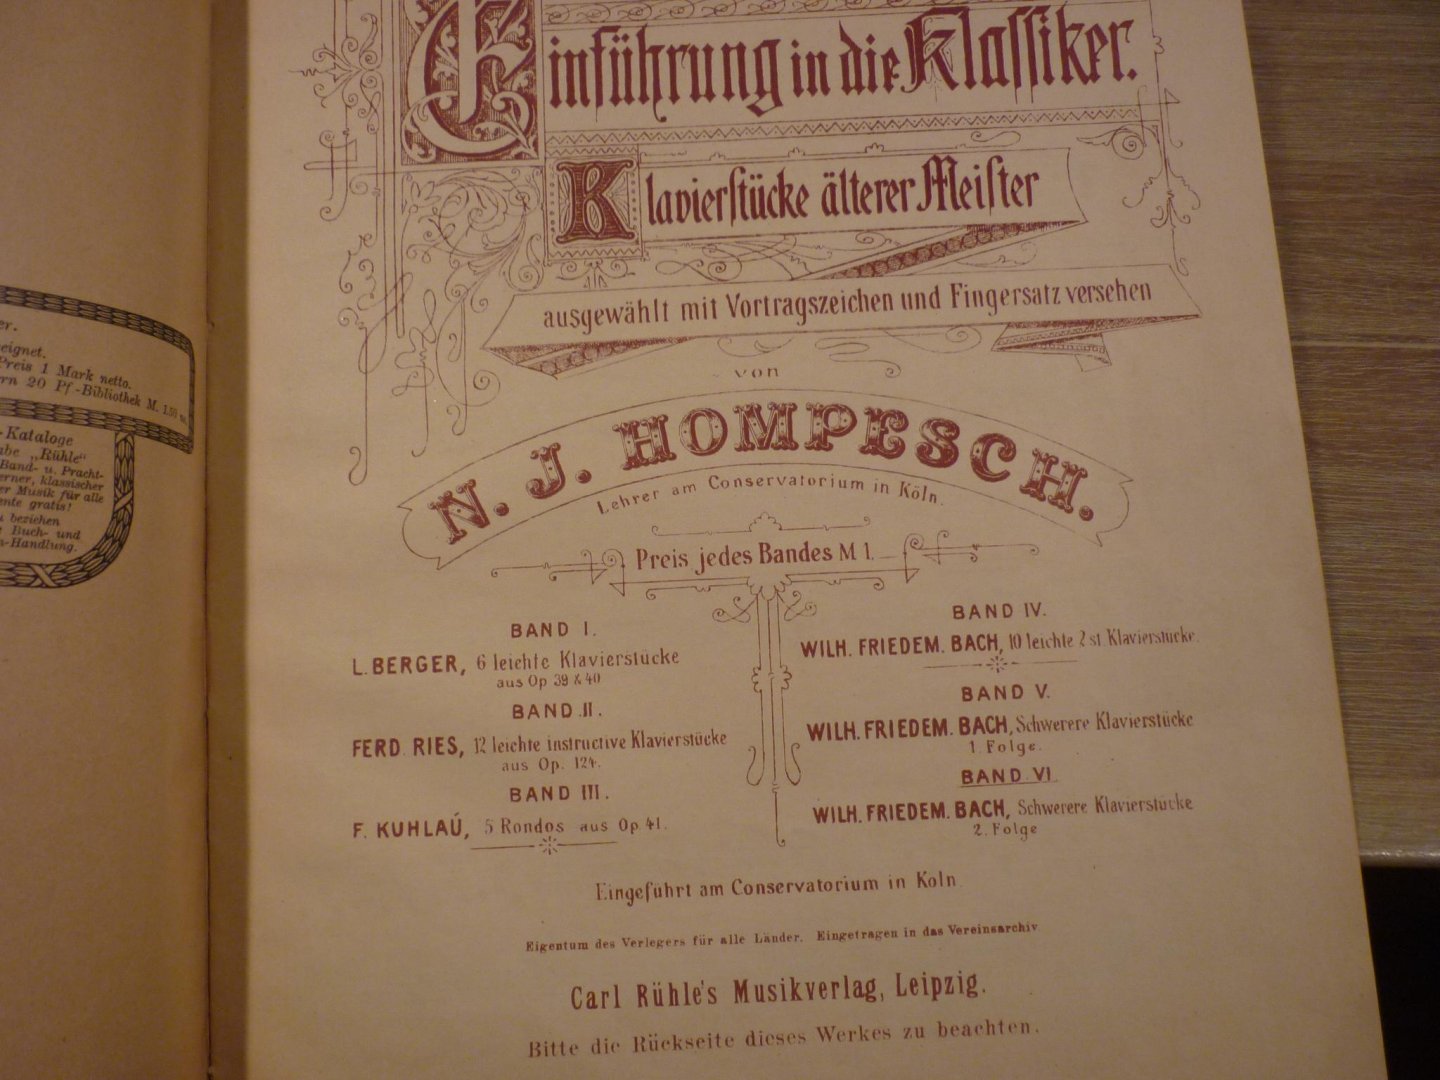 Bach; Wilhelm Friedemann (1710–1784) - 10 Leichte zweistimmige Klavierstucke, Band IV  //  Swerere Klavierstucke, I. Folge - Band V  //  Swerere Klavierstucke, II. Folge - Band VI